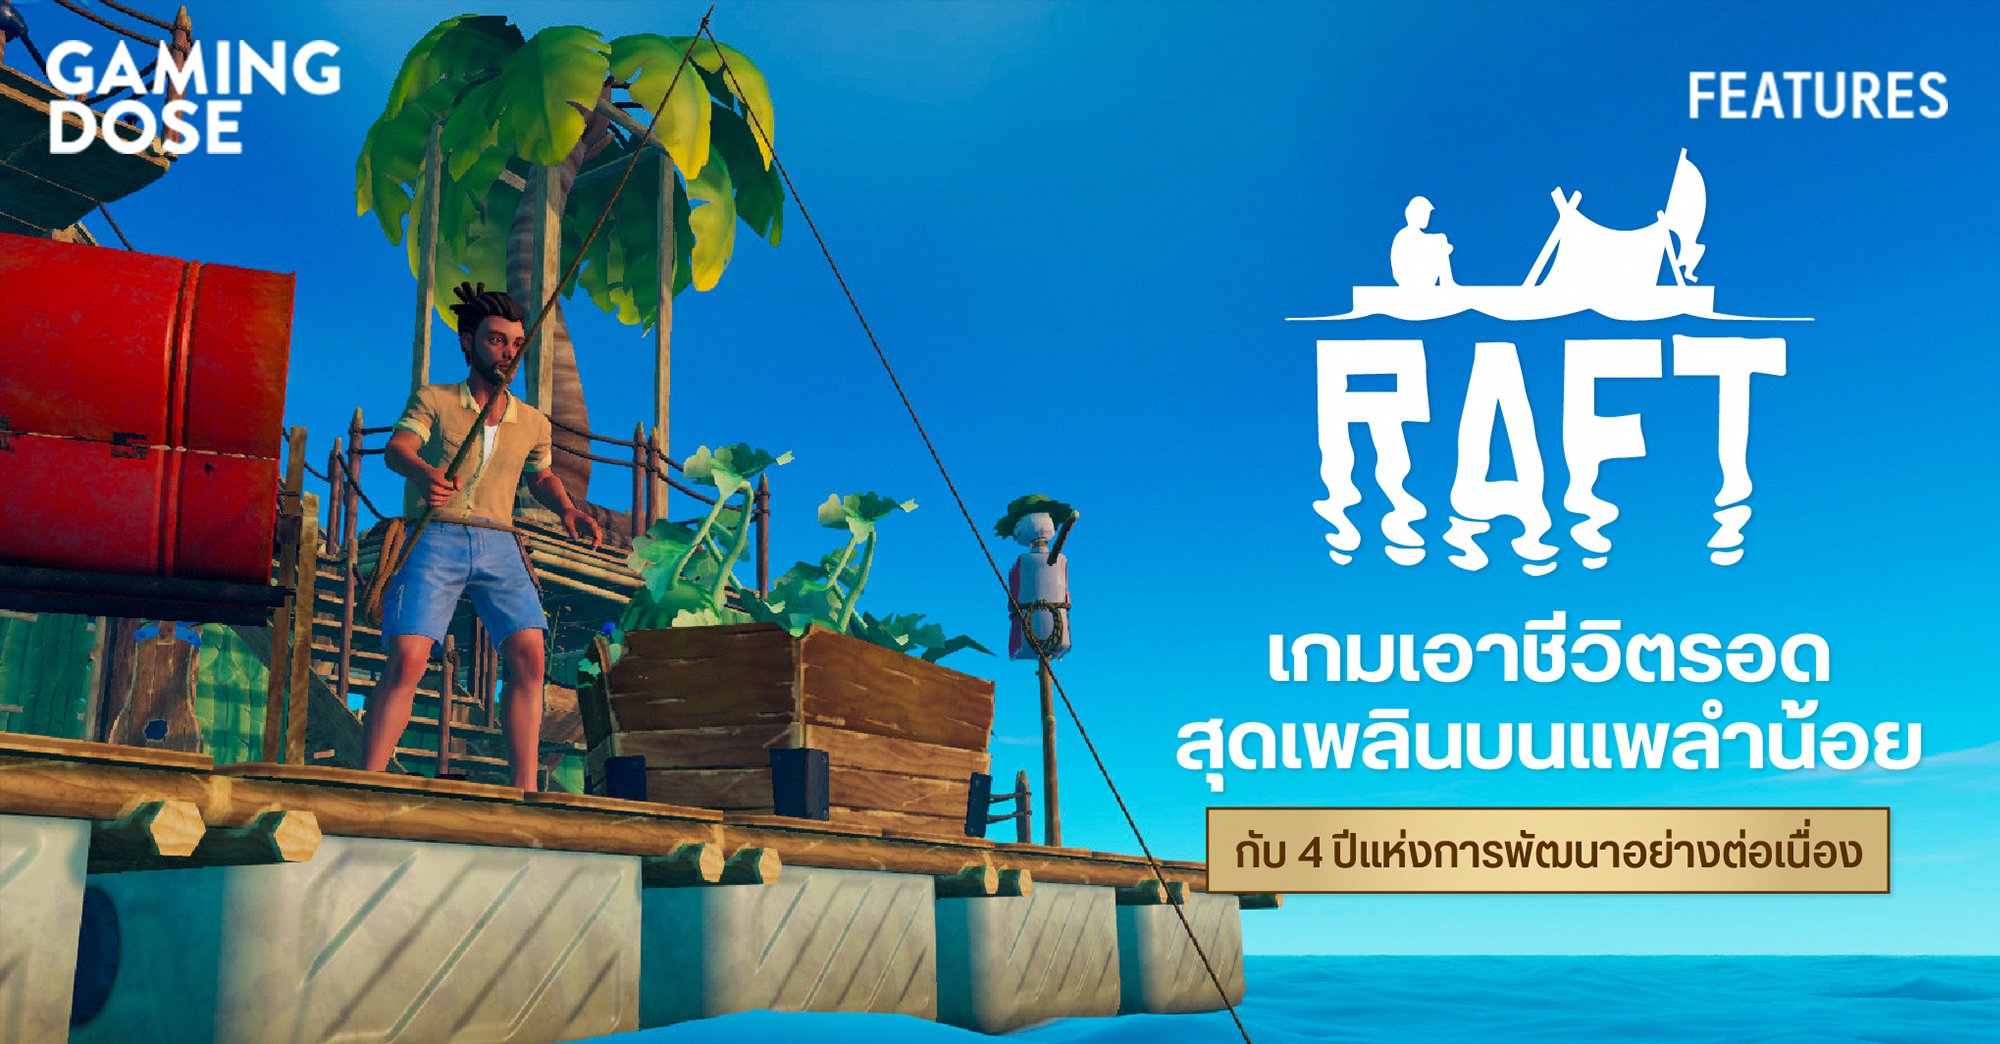 Raft เกมเอาชีวิตรอดสุดเพลินบนแพลำน้อย กับ 4 ปีแห่งการพัฒนาอย่างต่อเนื่อง